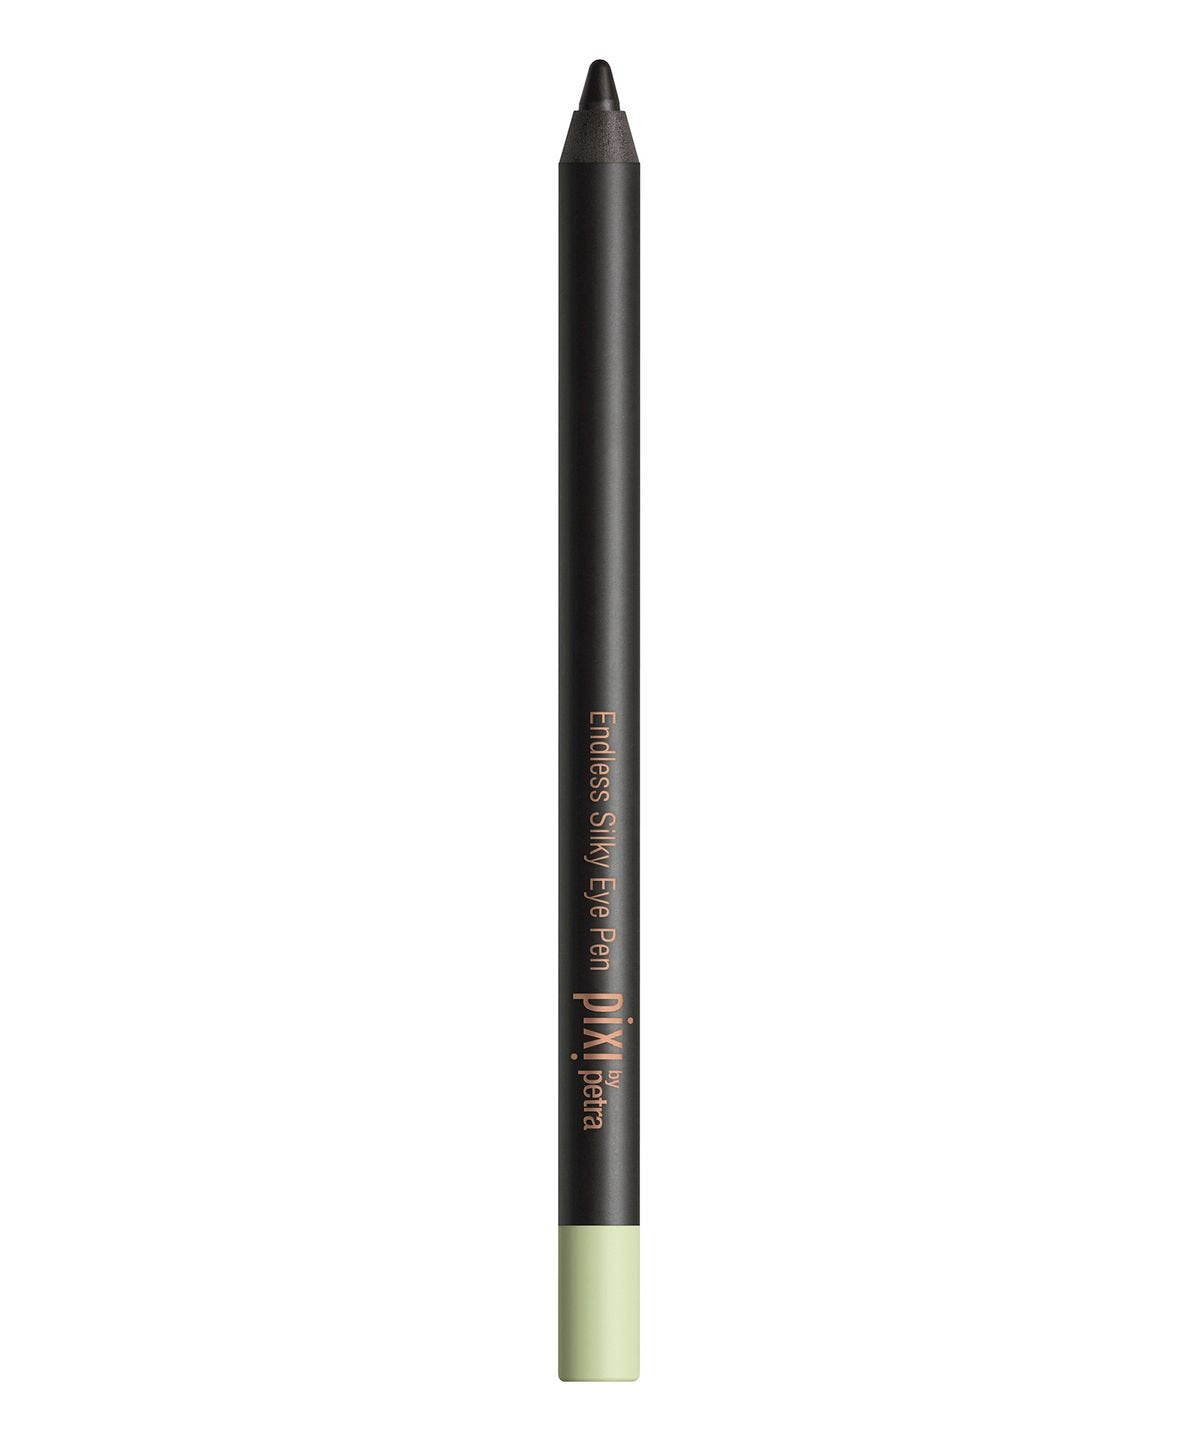 Pixi - Endless Silky Eye Pen - No.4 Black Cocoa